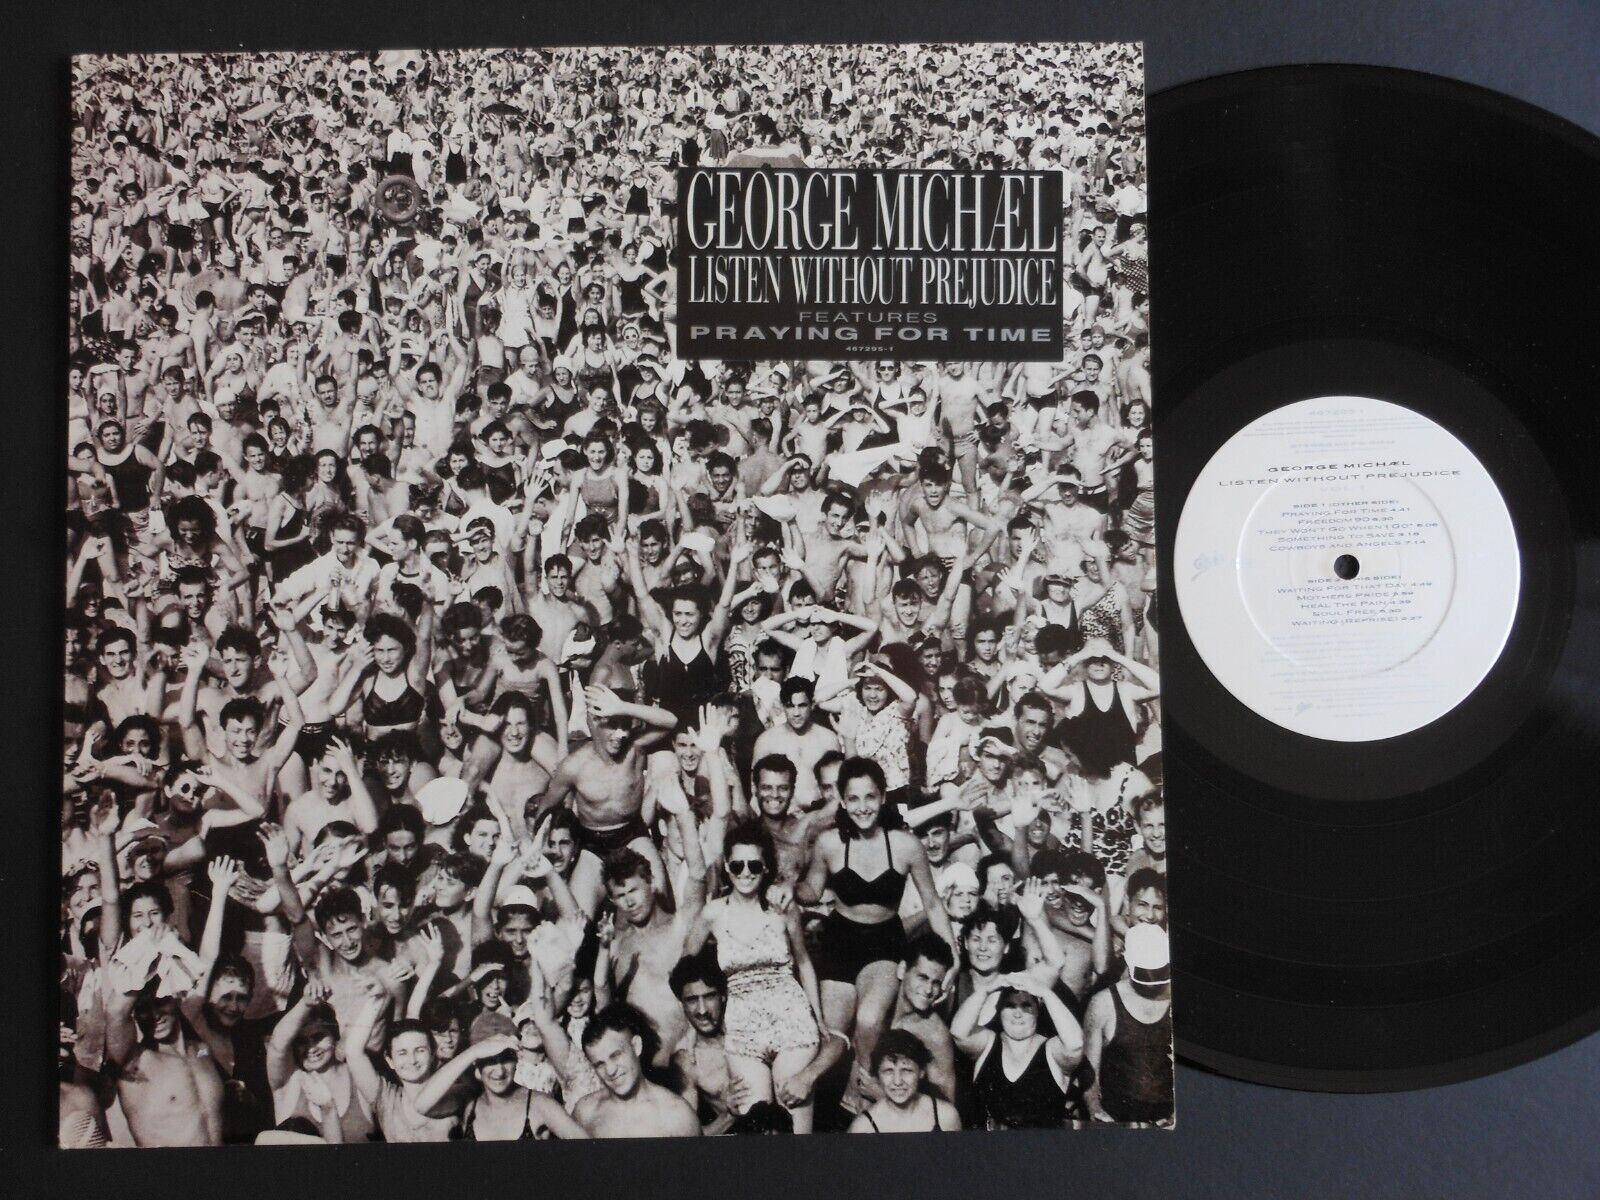 GEORGE MICHAEL Listen Without Prejudice Vol. 1 12" Vinyl LP album 1990 Epic 4672